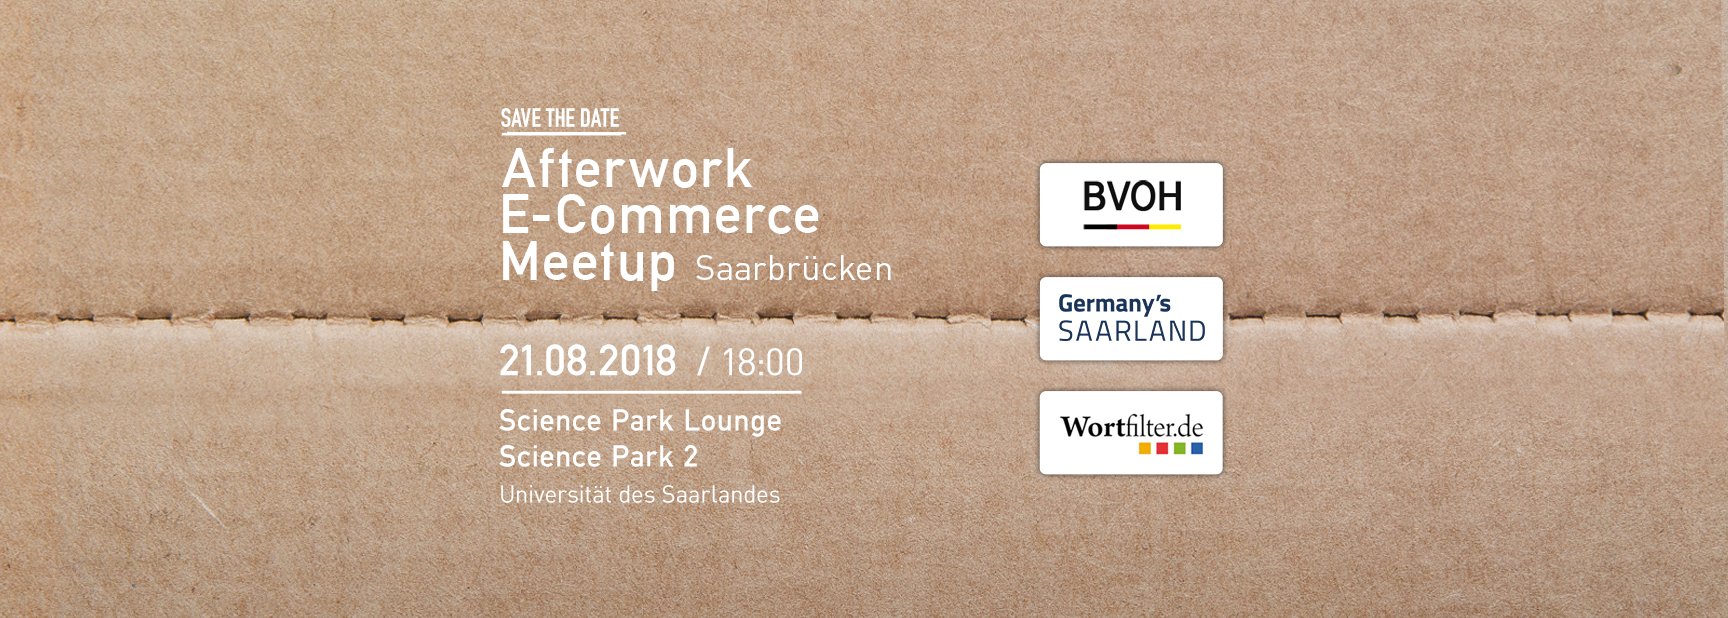 Afterwork e-commerce Meetup in Saarbrücken